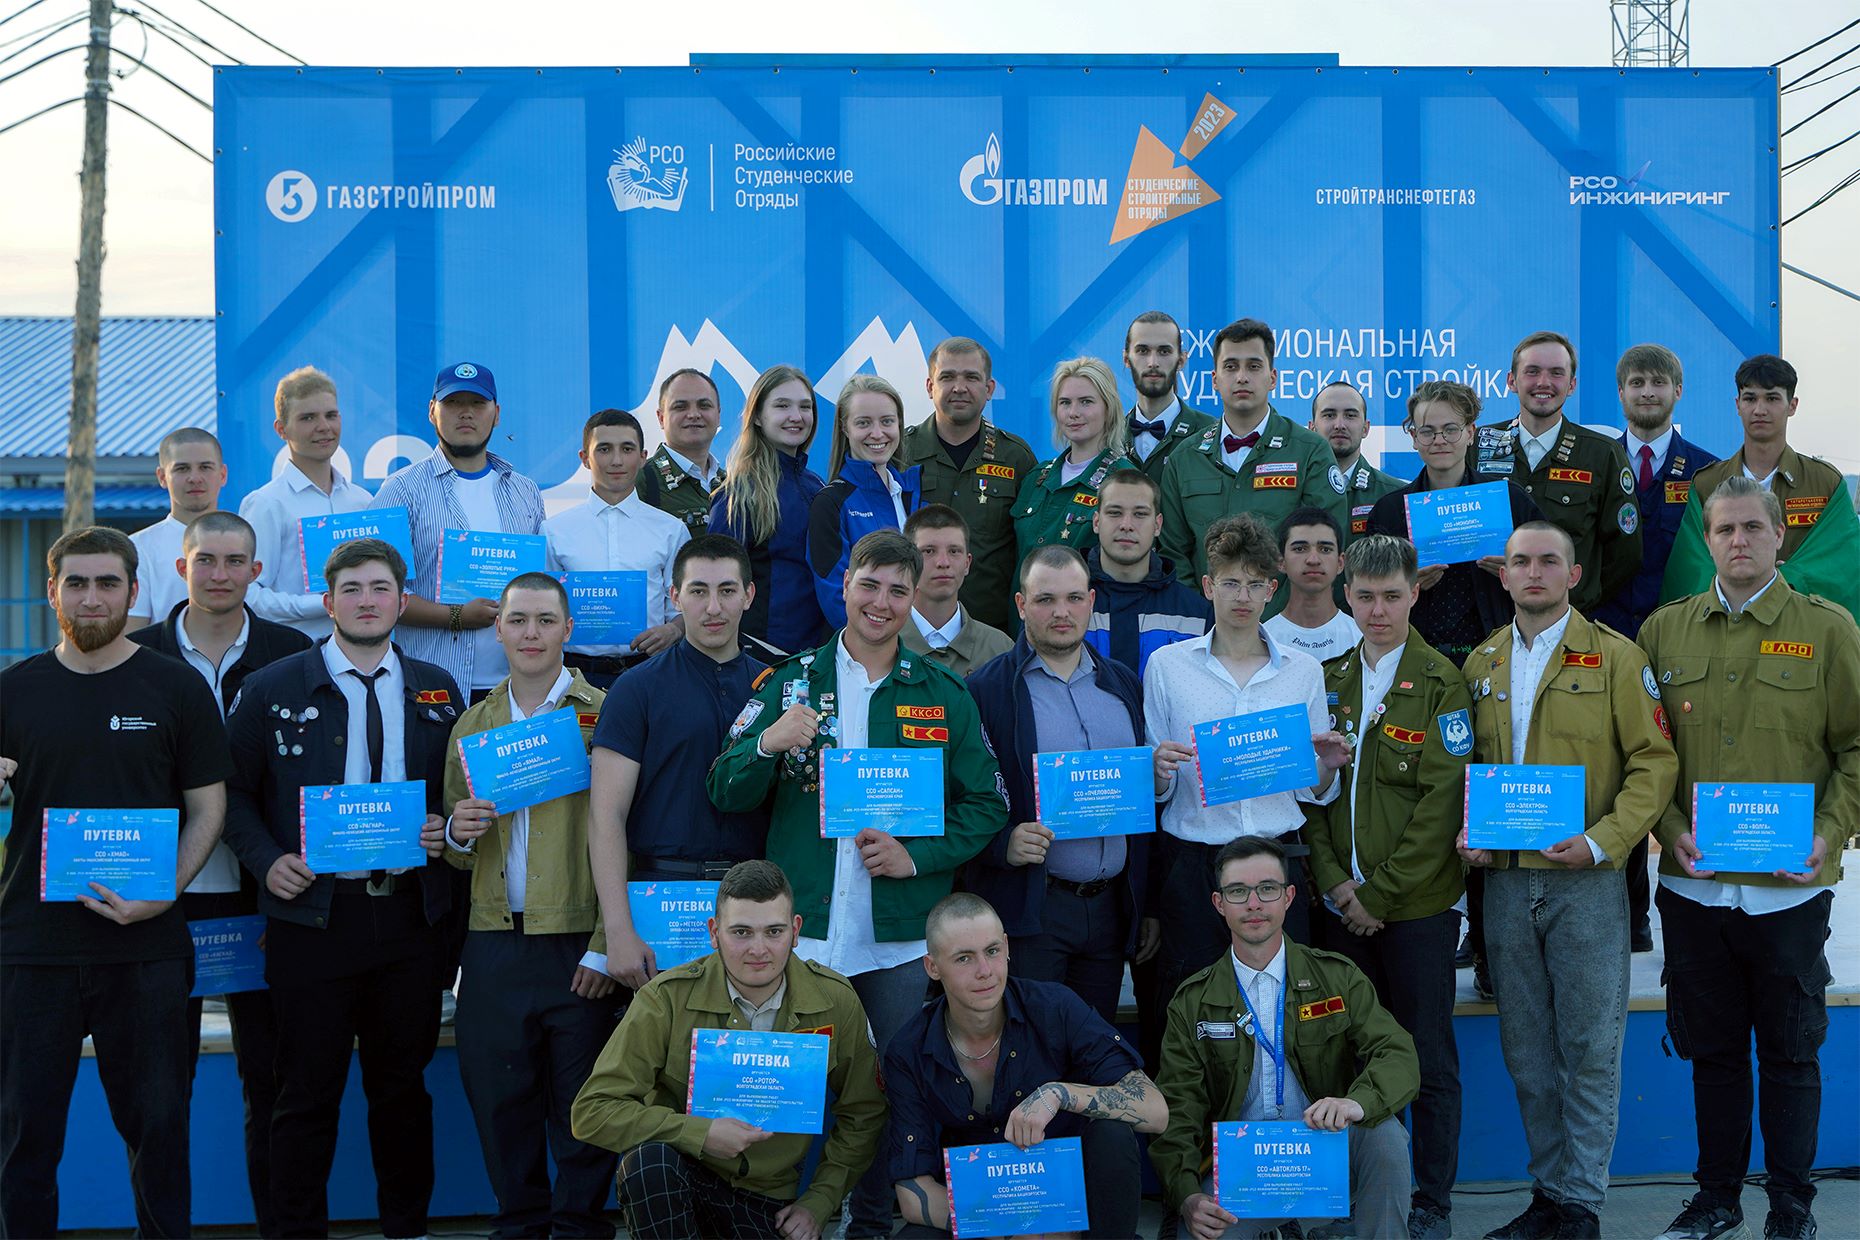 Корпоративный университет «Газстройпрома» празднует первую годовщину